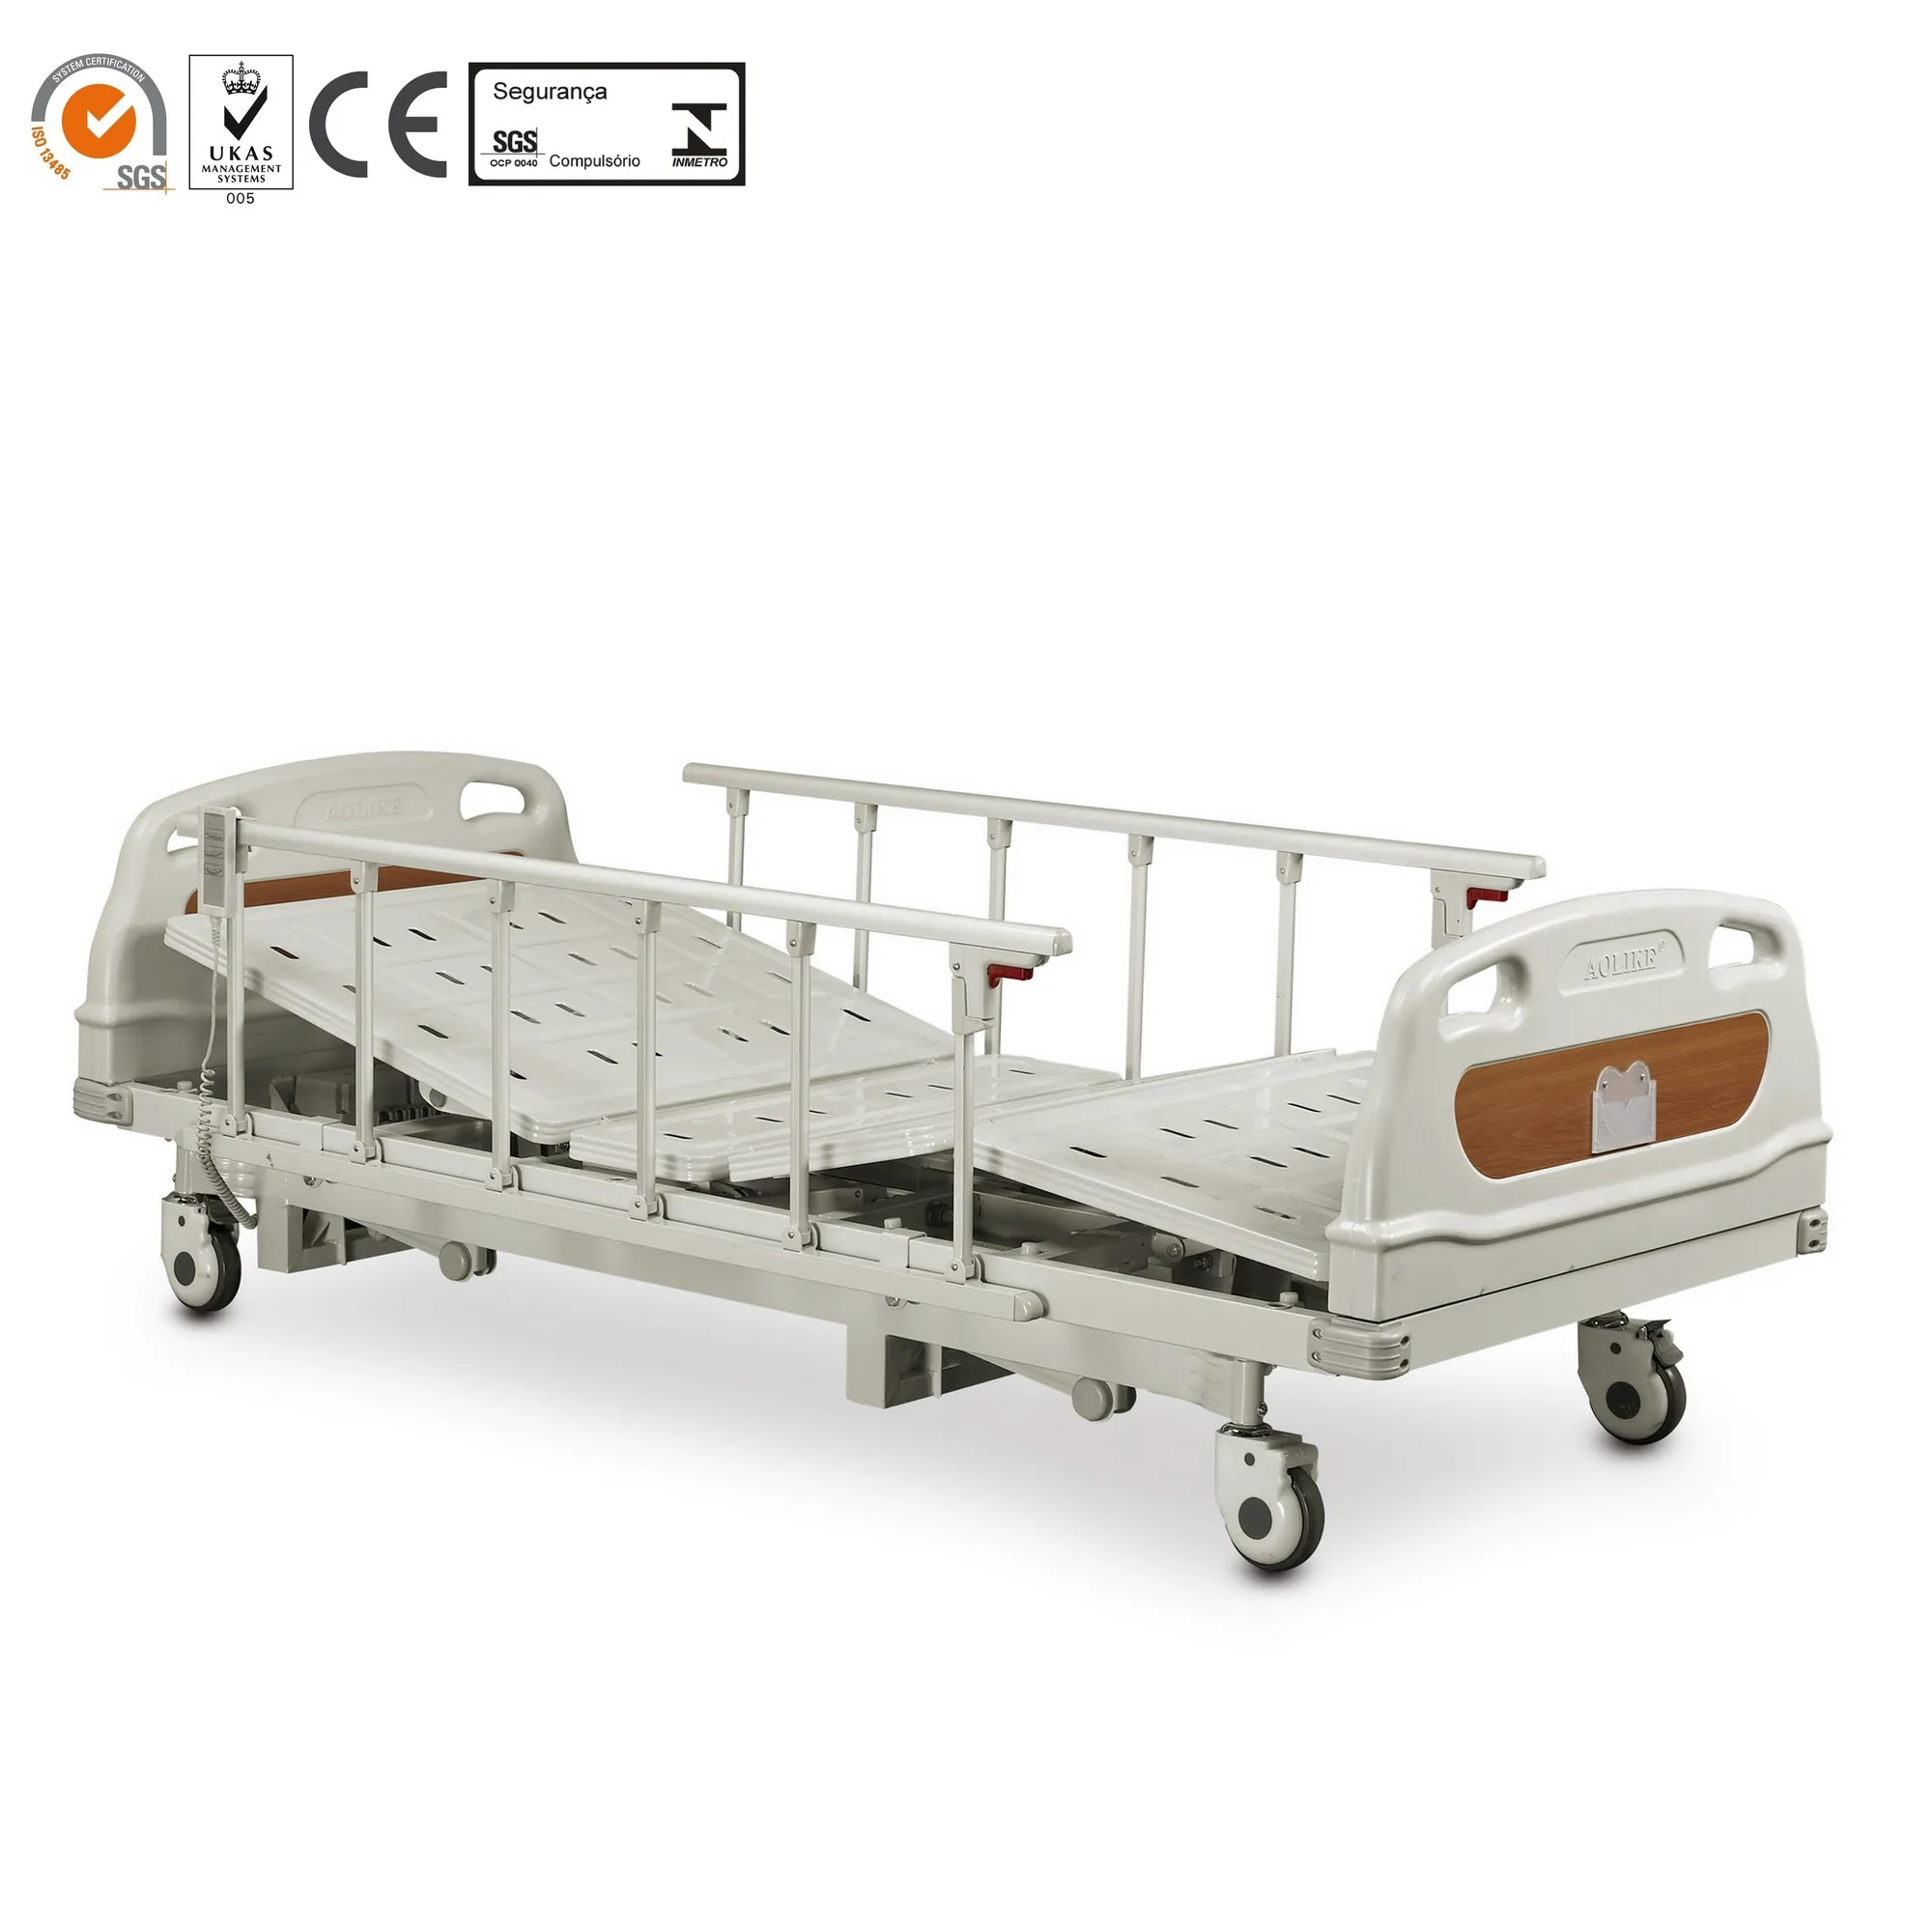 Сертифицировано CE,SFDA, трехфункциональная электрическая Больничная кровать из металла с очень низкой высотой, 1 год, бесплатные запасные части, 3 функции